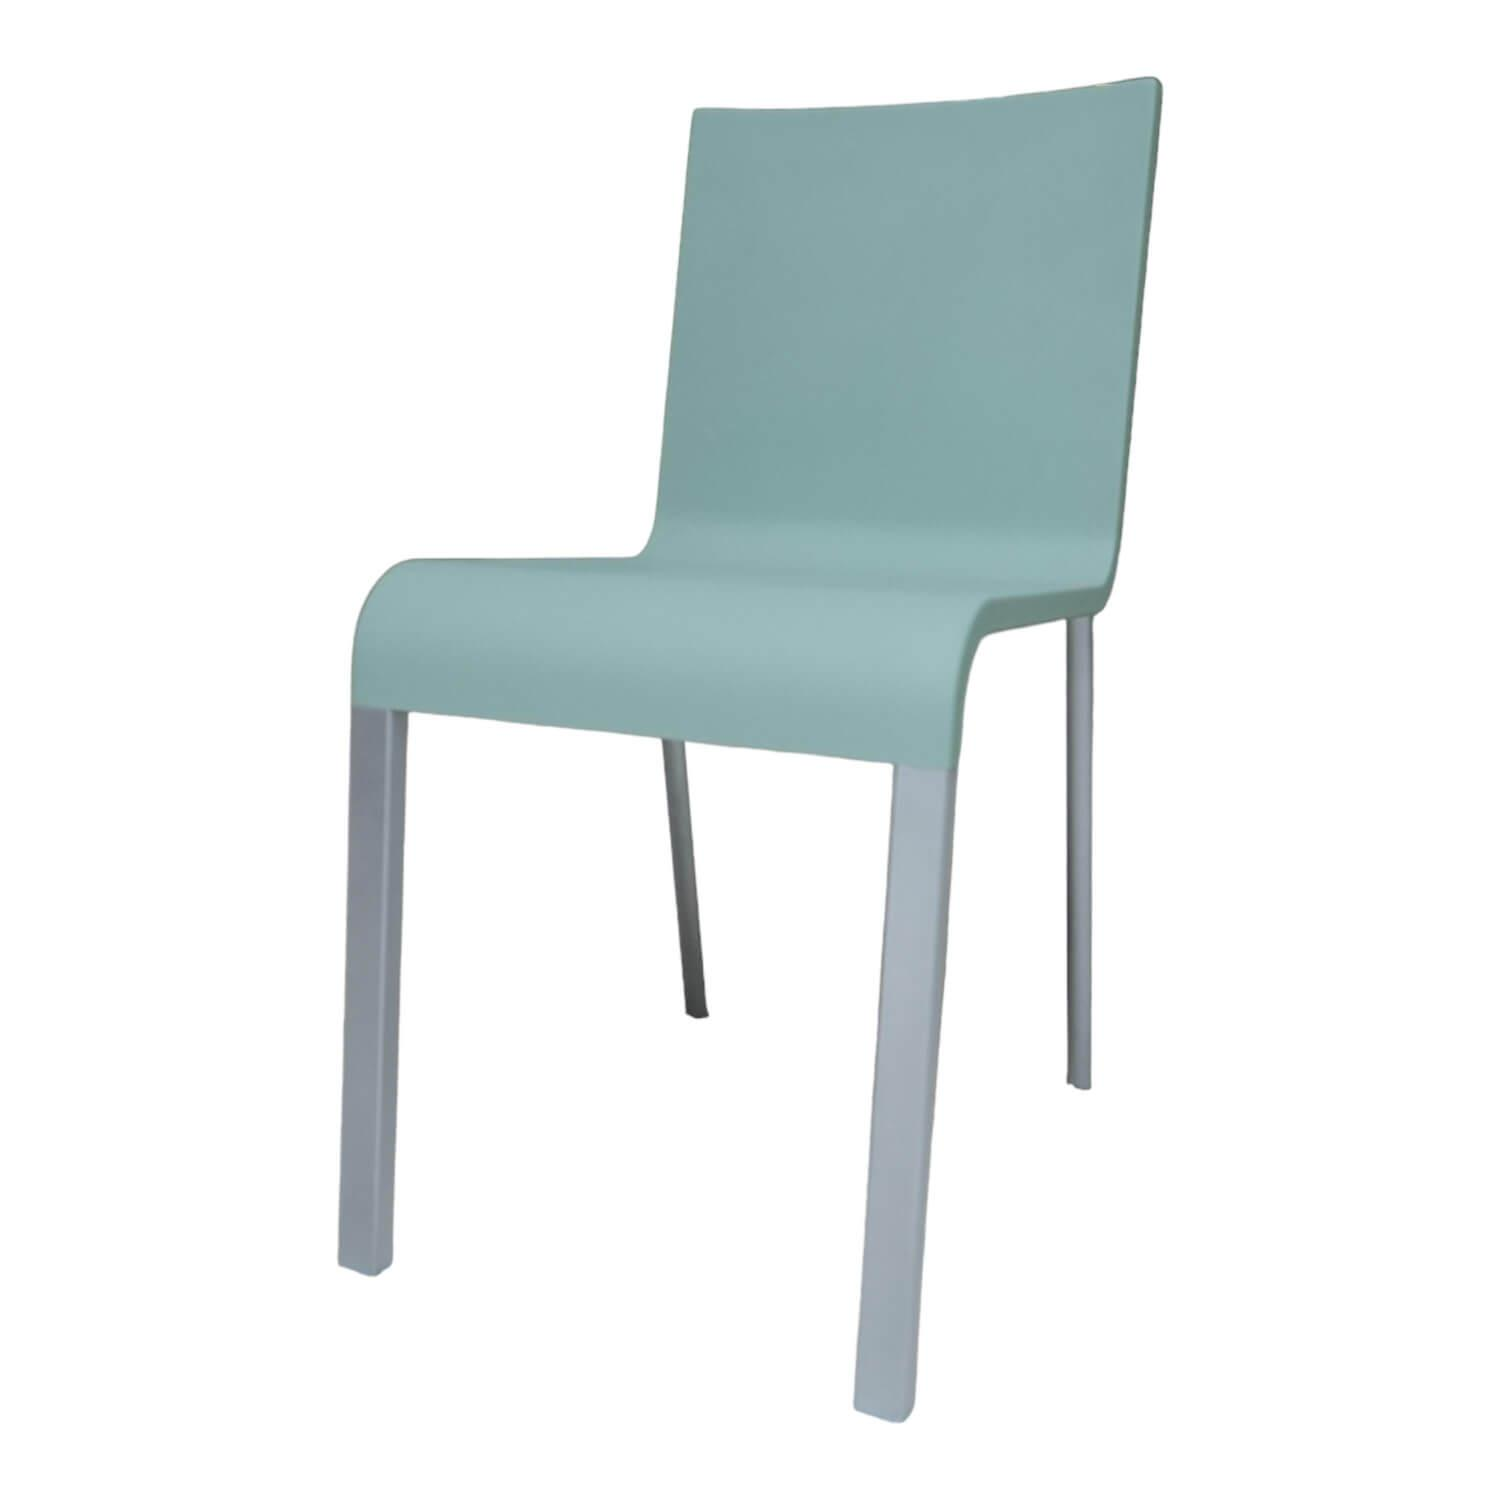 Stuhl 03 Sitzschalenfarbe Mint Untergestell Pulverbeschichtet Silber Glatt